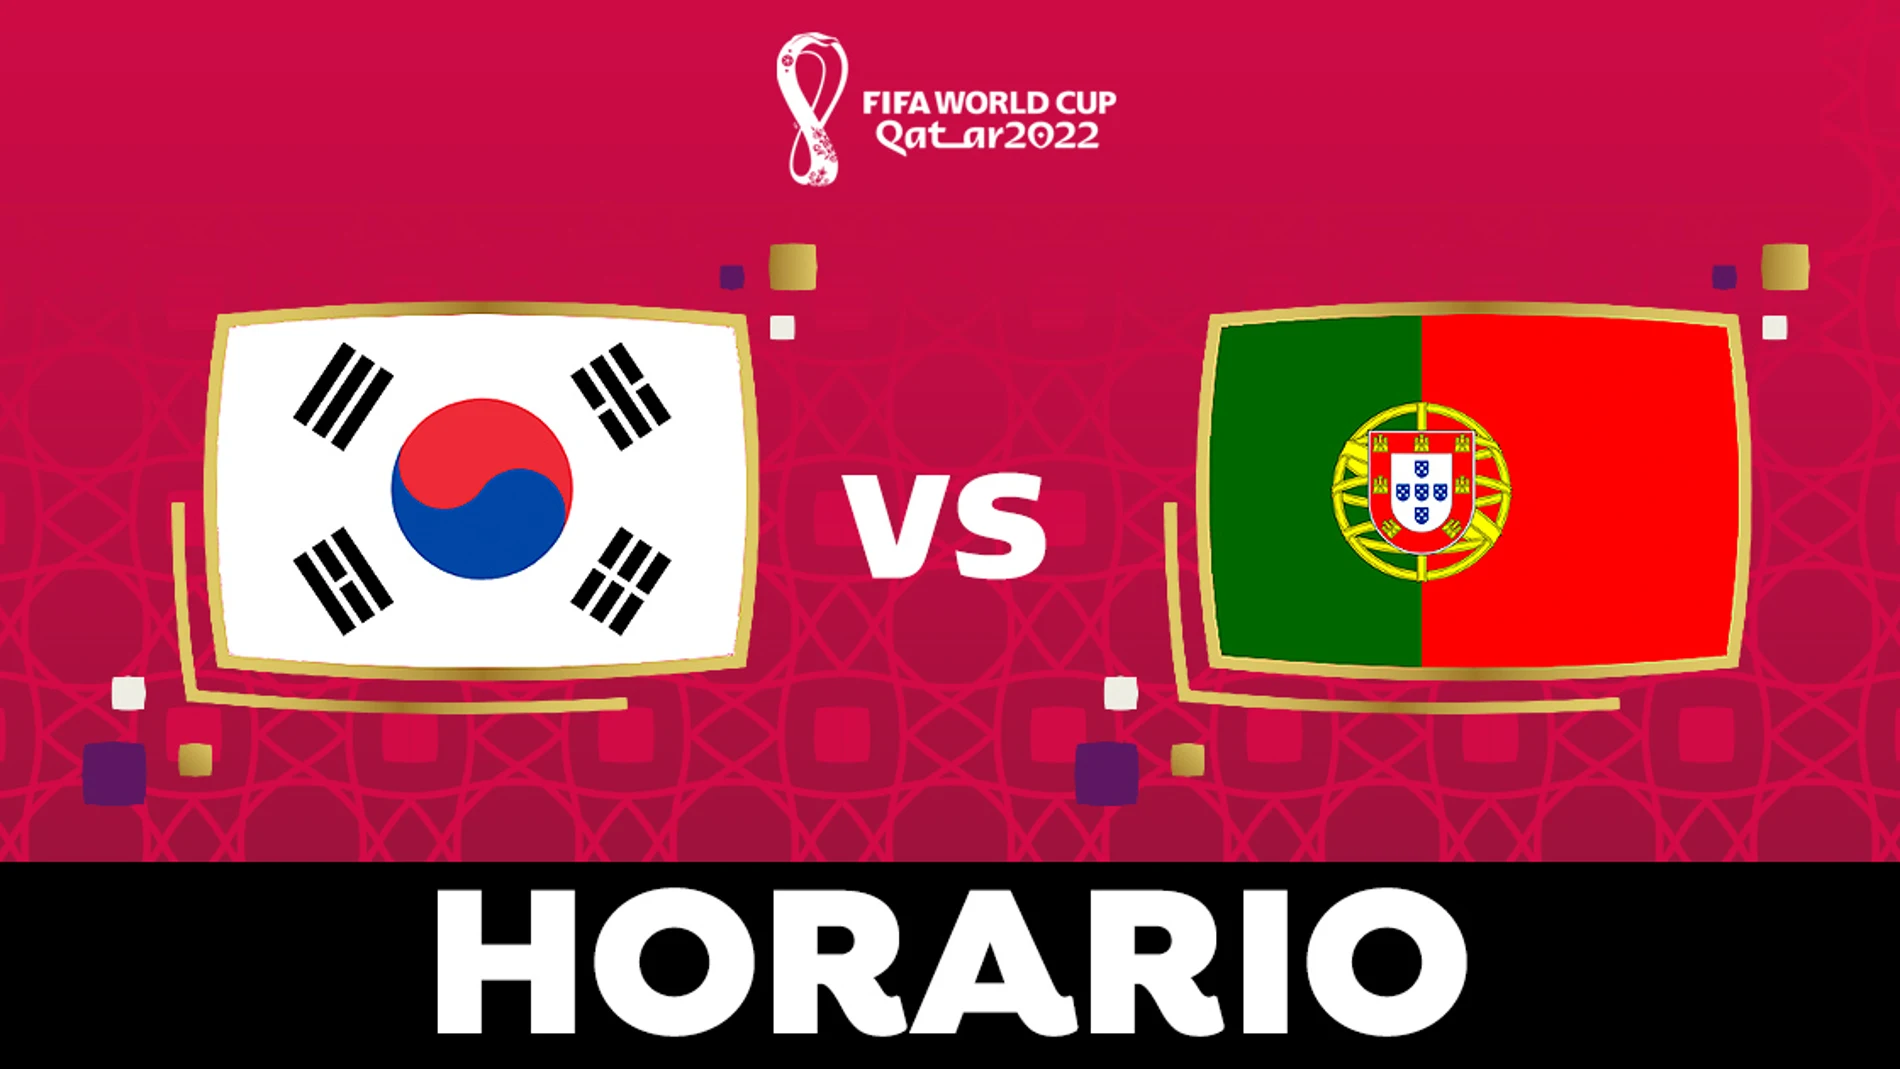 Corea del Sur - Portugal: Horario, alineaciones y dónde ver el partido del Grupo H del Mundial de Qatar 2022 en directo